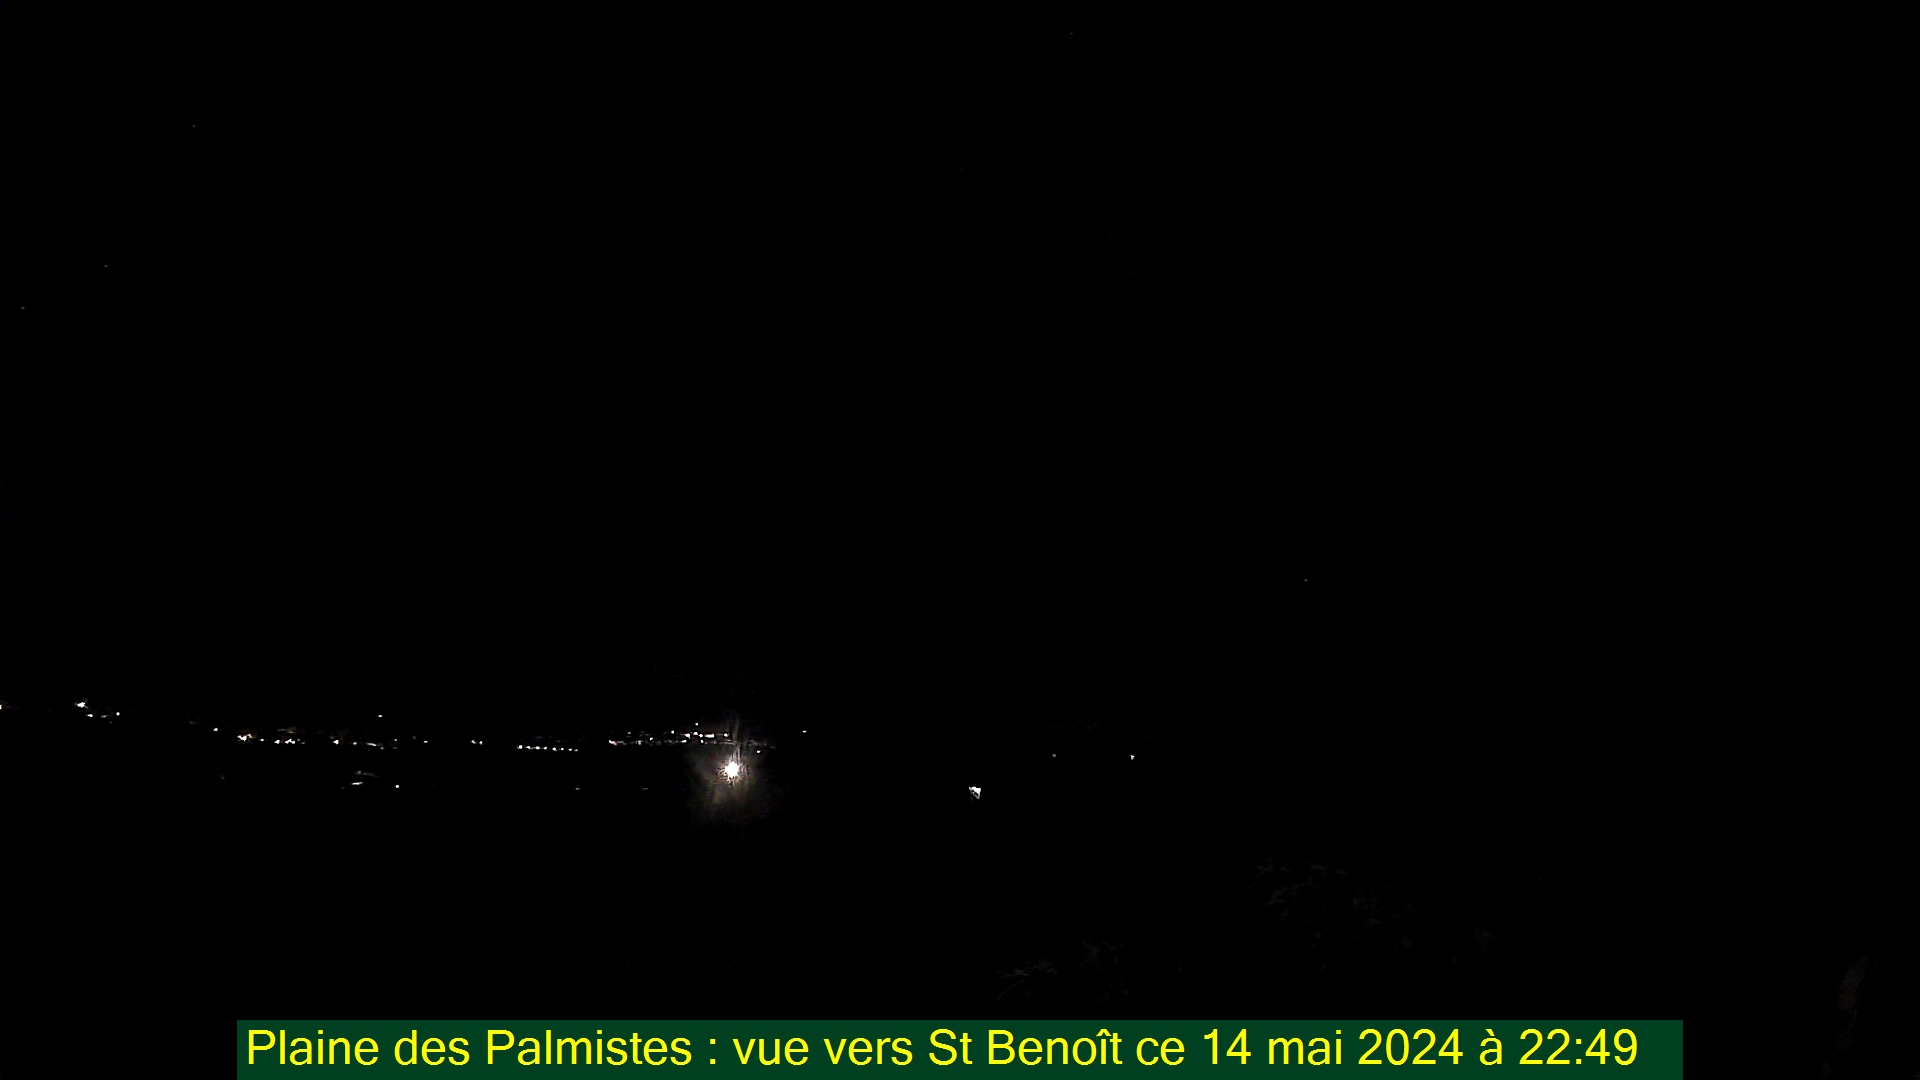 Saint-Denis (Réunion) Do. 22:50